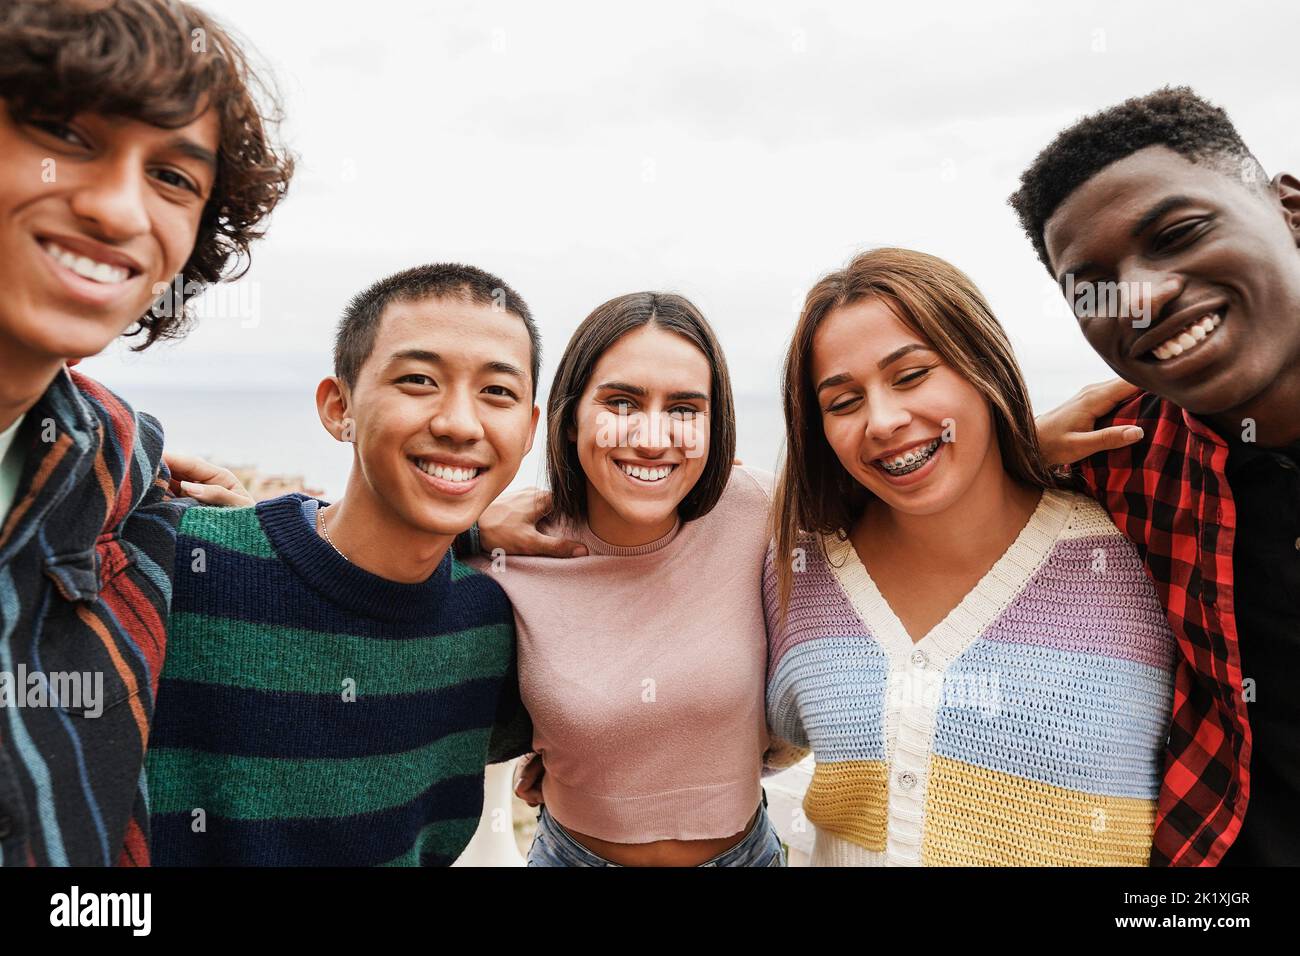 Portrait von multirassischen Freunden mit Spaß lächeln vor der Kamera im Freien - Fokus auf Mitte Mädchen Gesicht Stockfoto